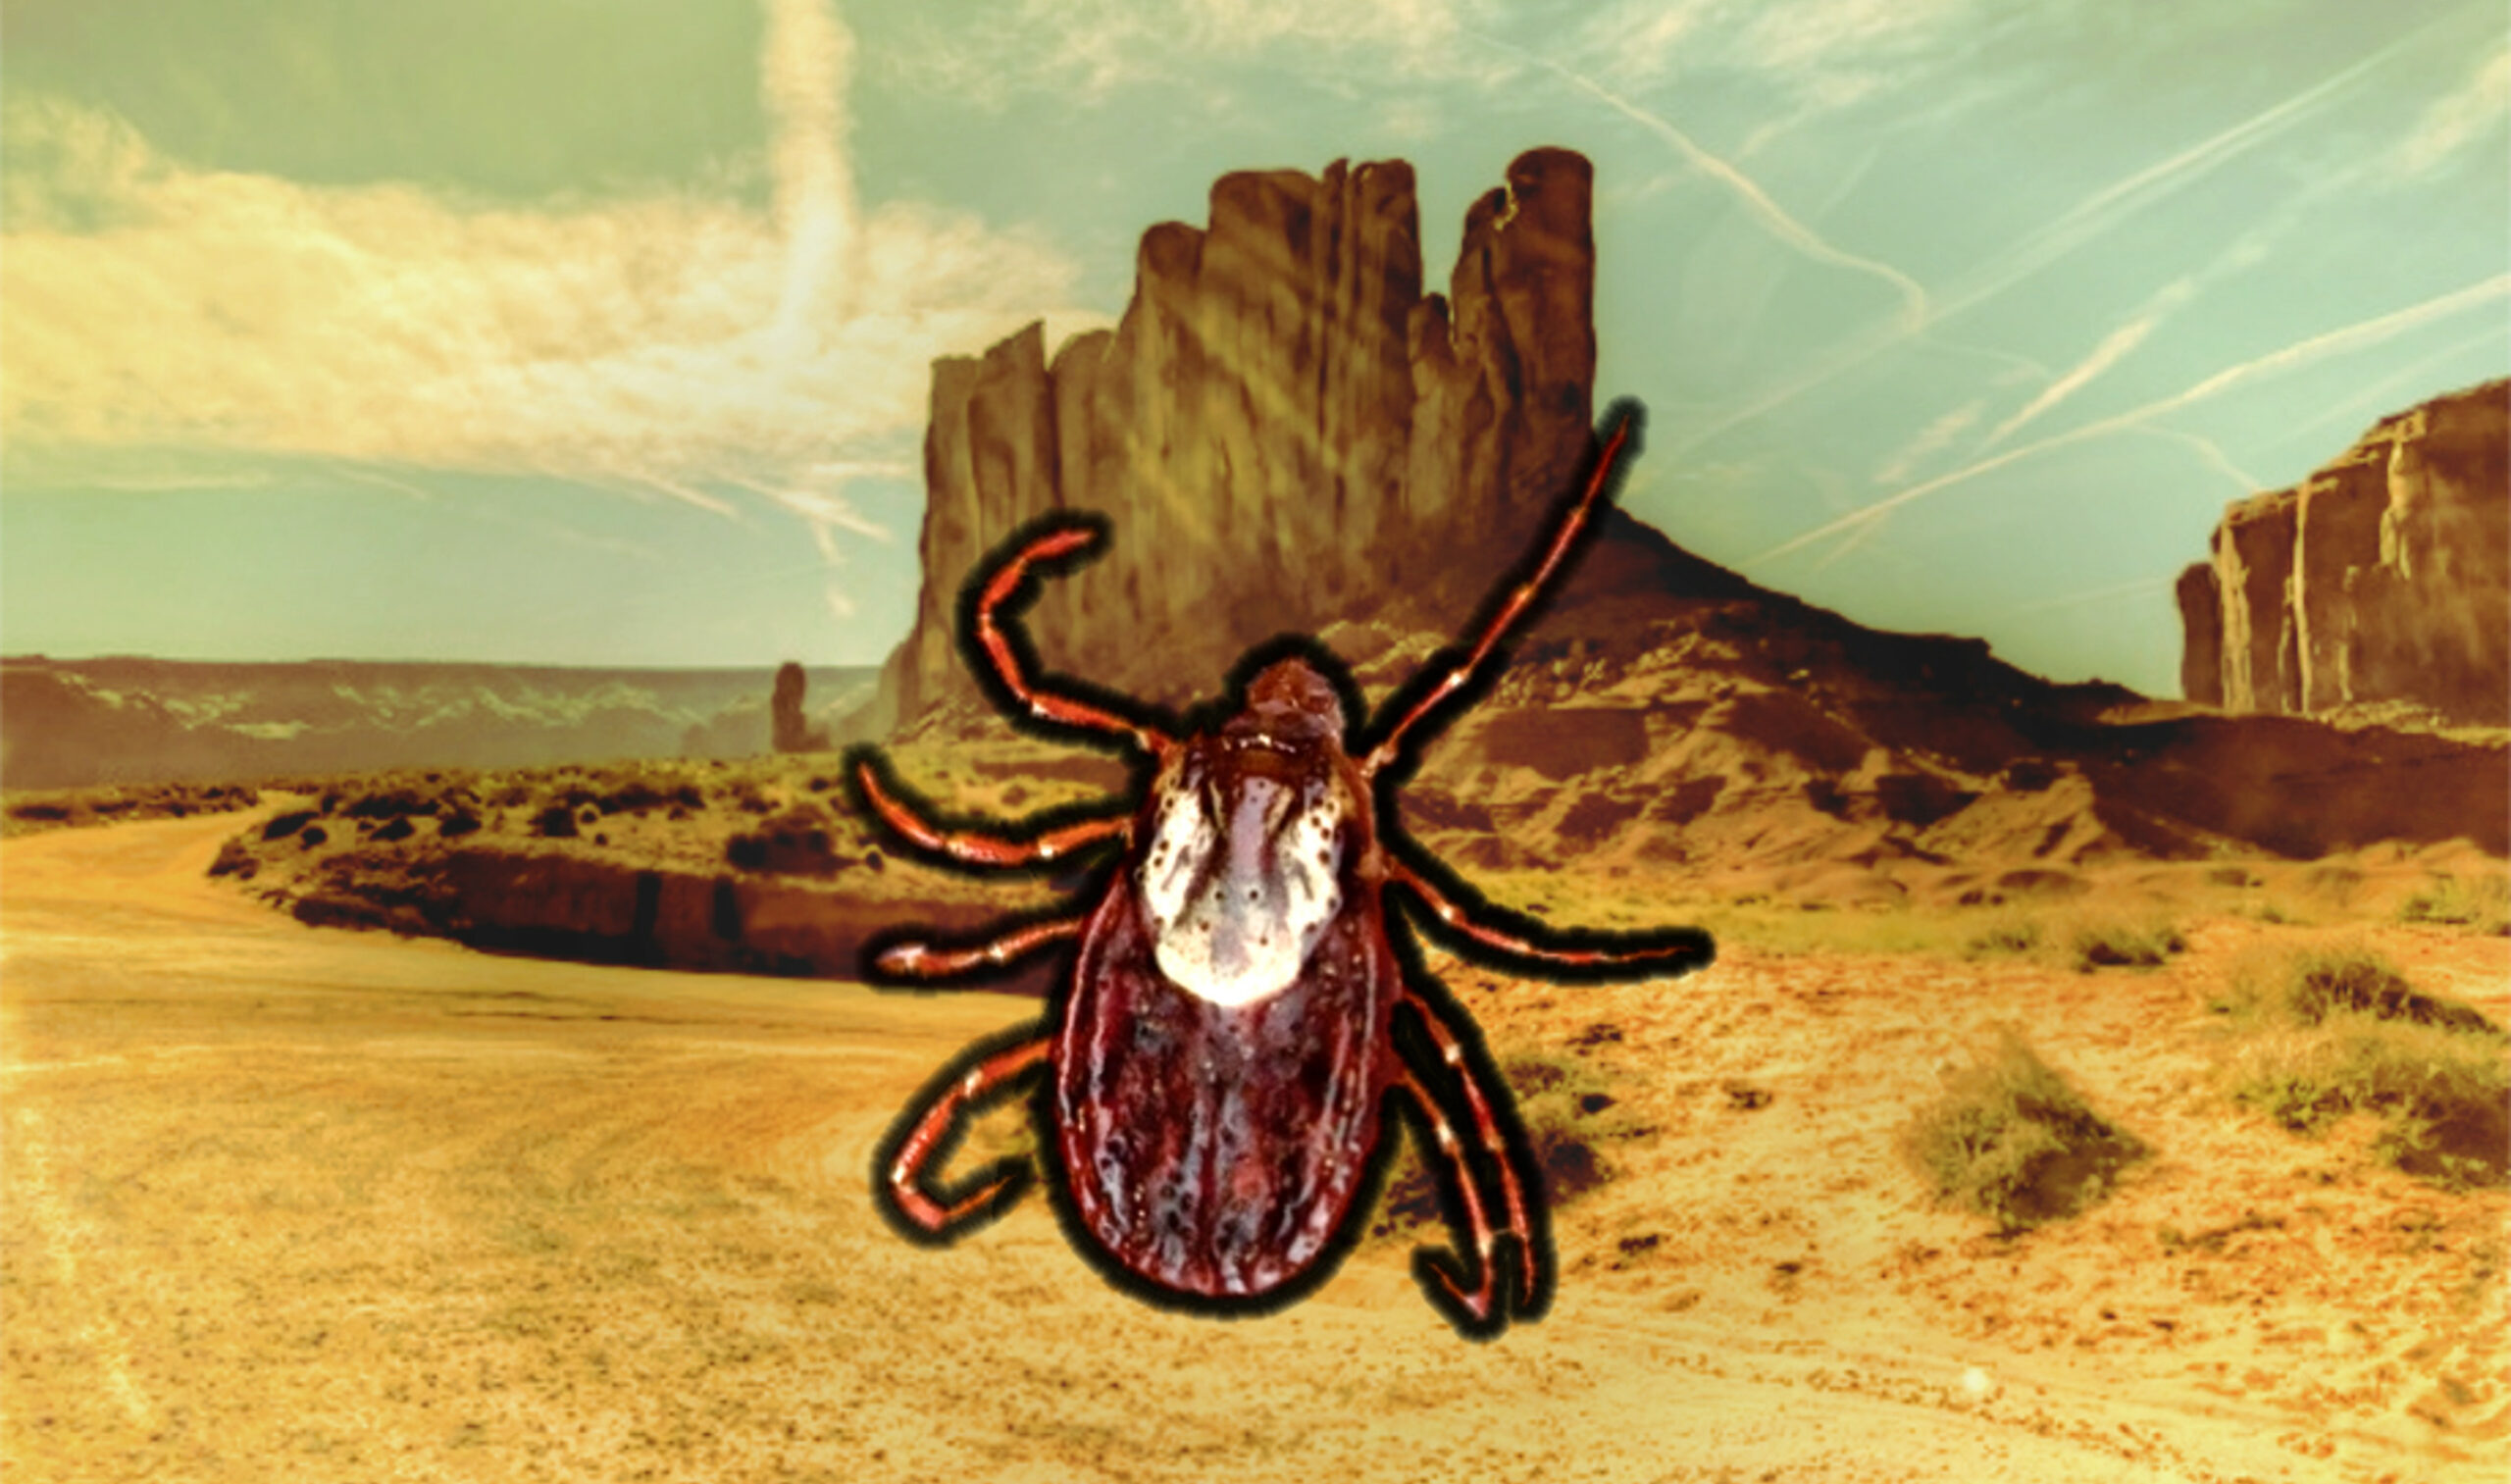 Ticks in the desert